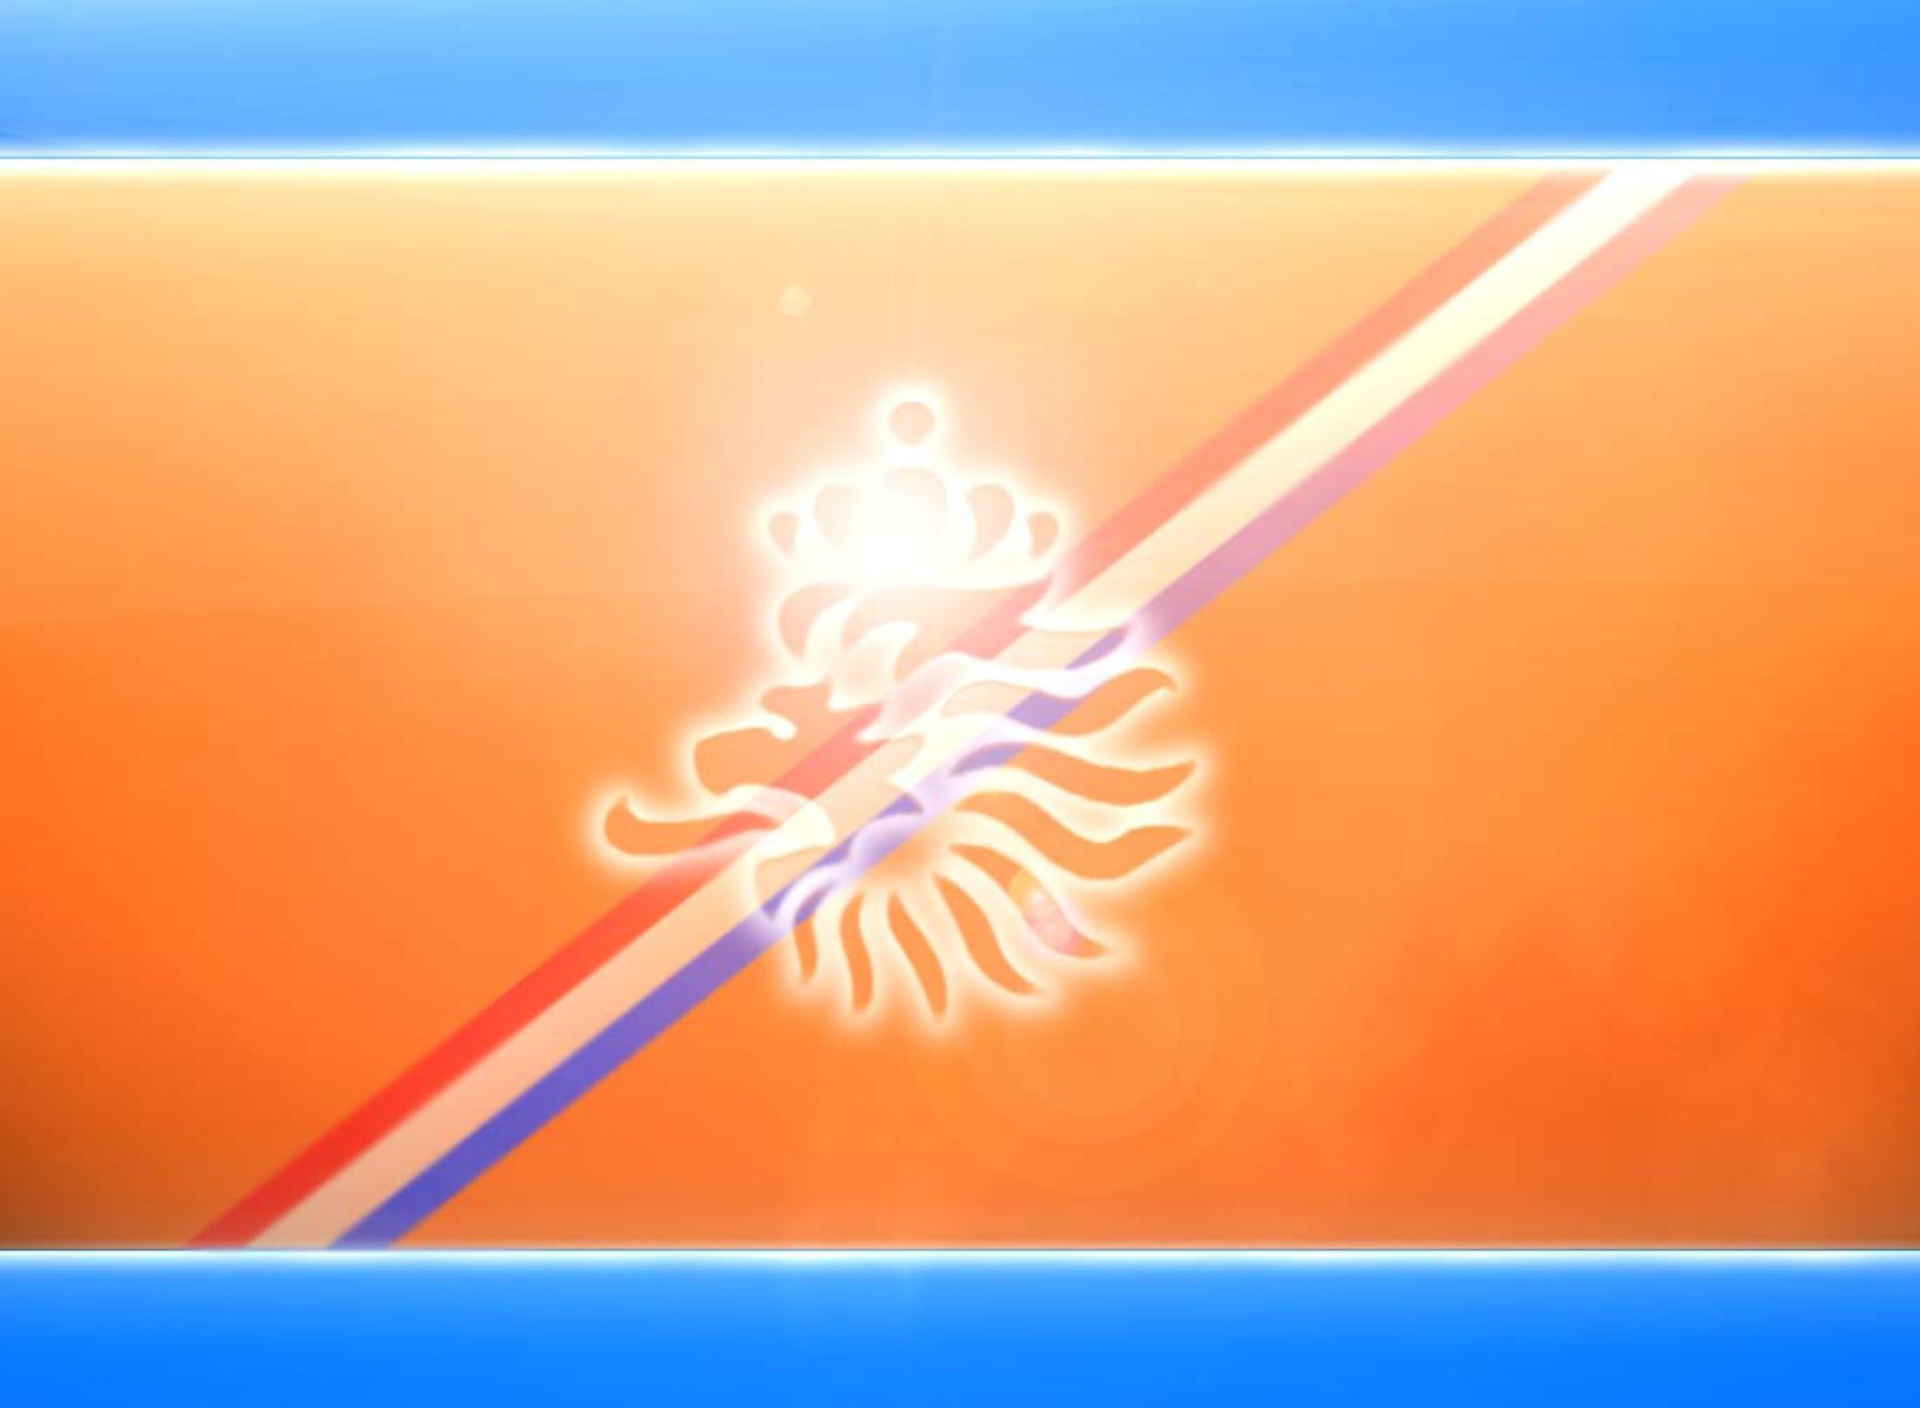 Netherlands National Football Team screenshot #1 1920x1408